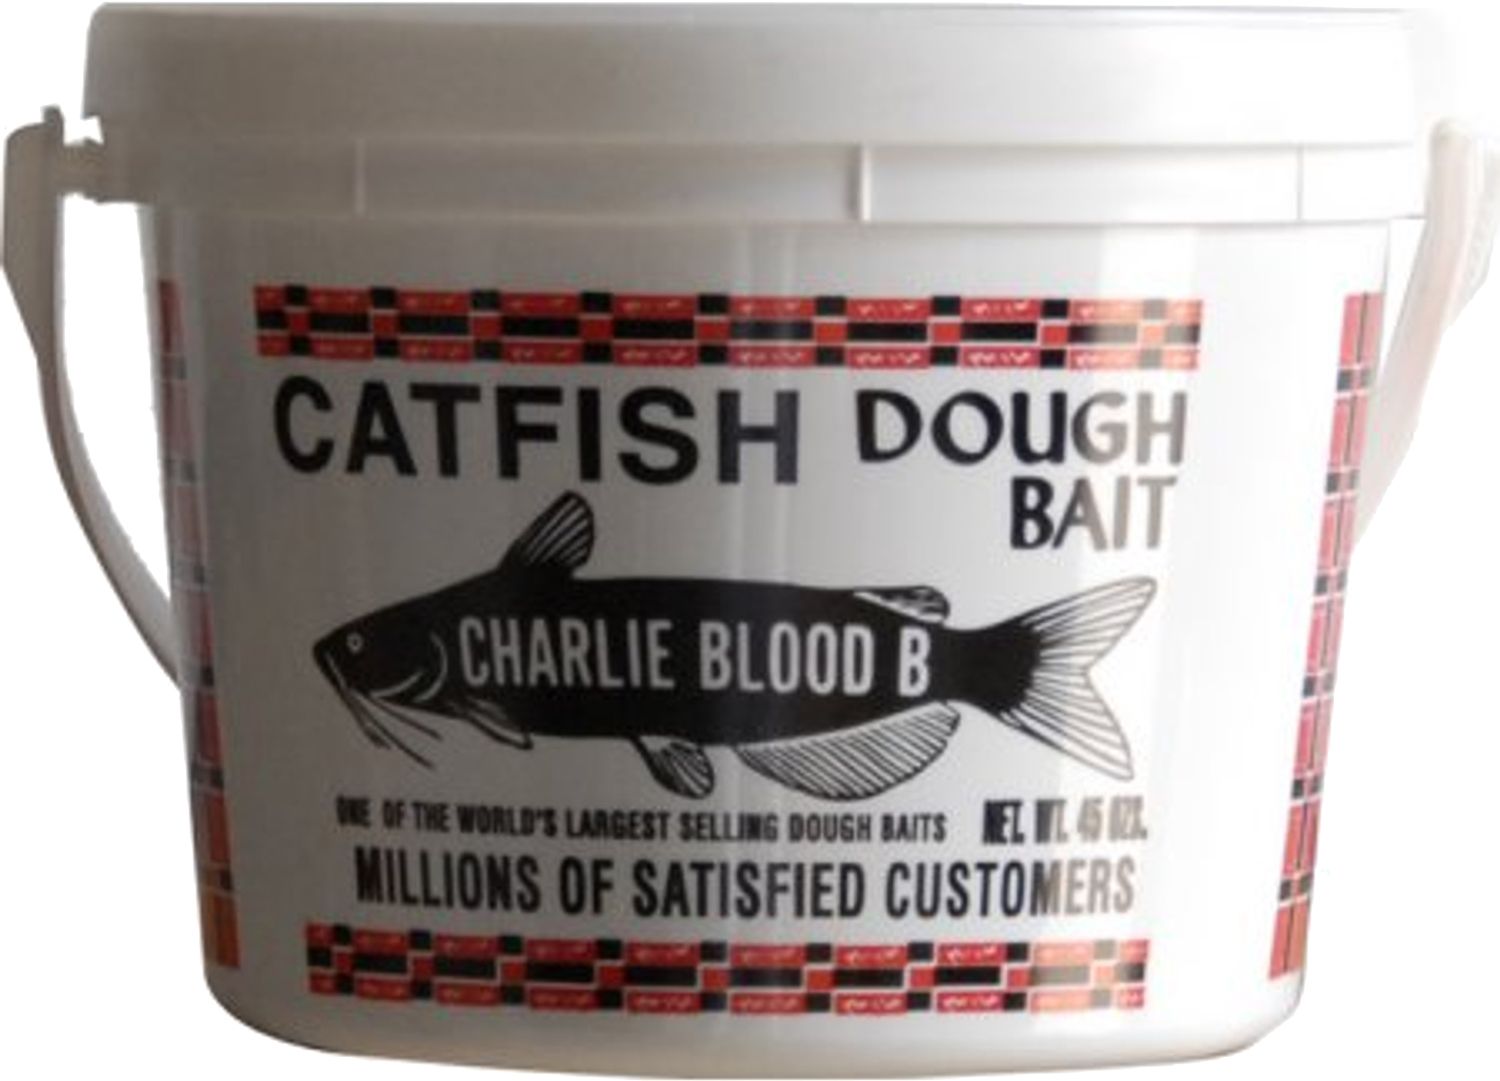 Catfish Charlie Type B Catfish Blood Dip Bait - 14oz